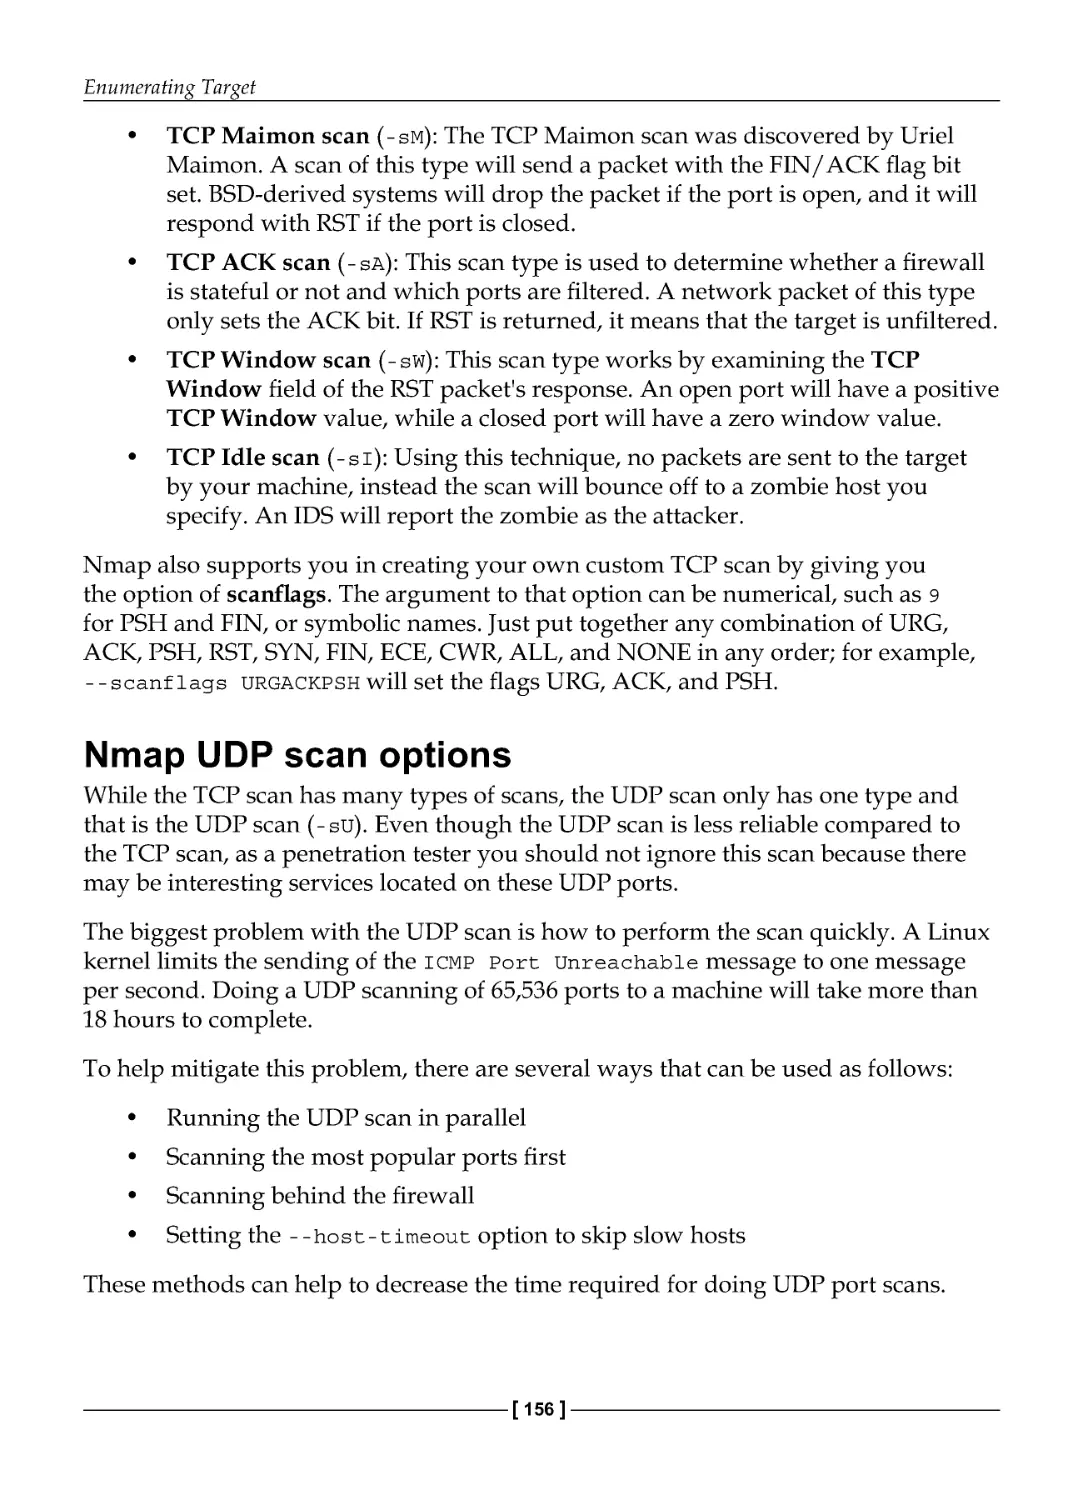 Nmap UDP scan options